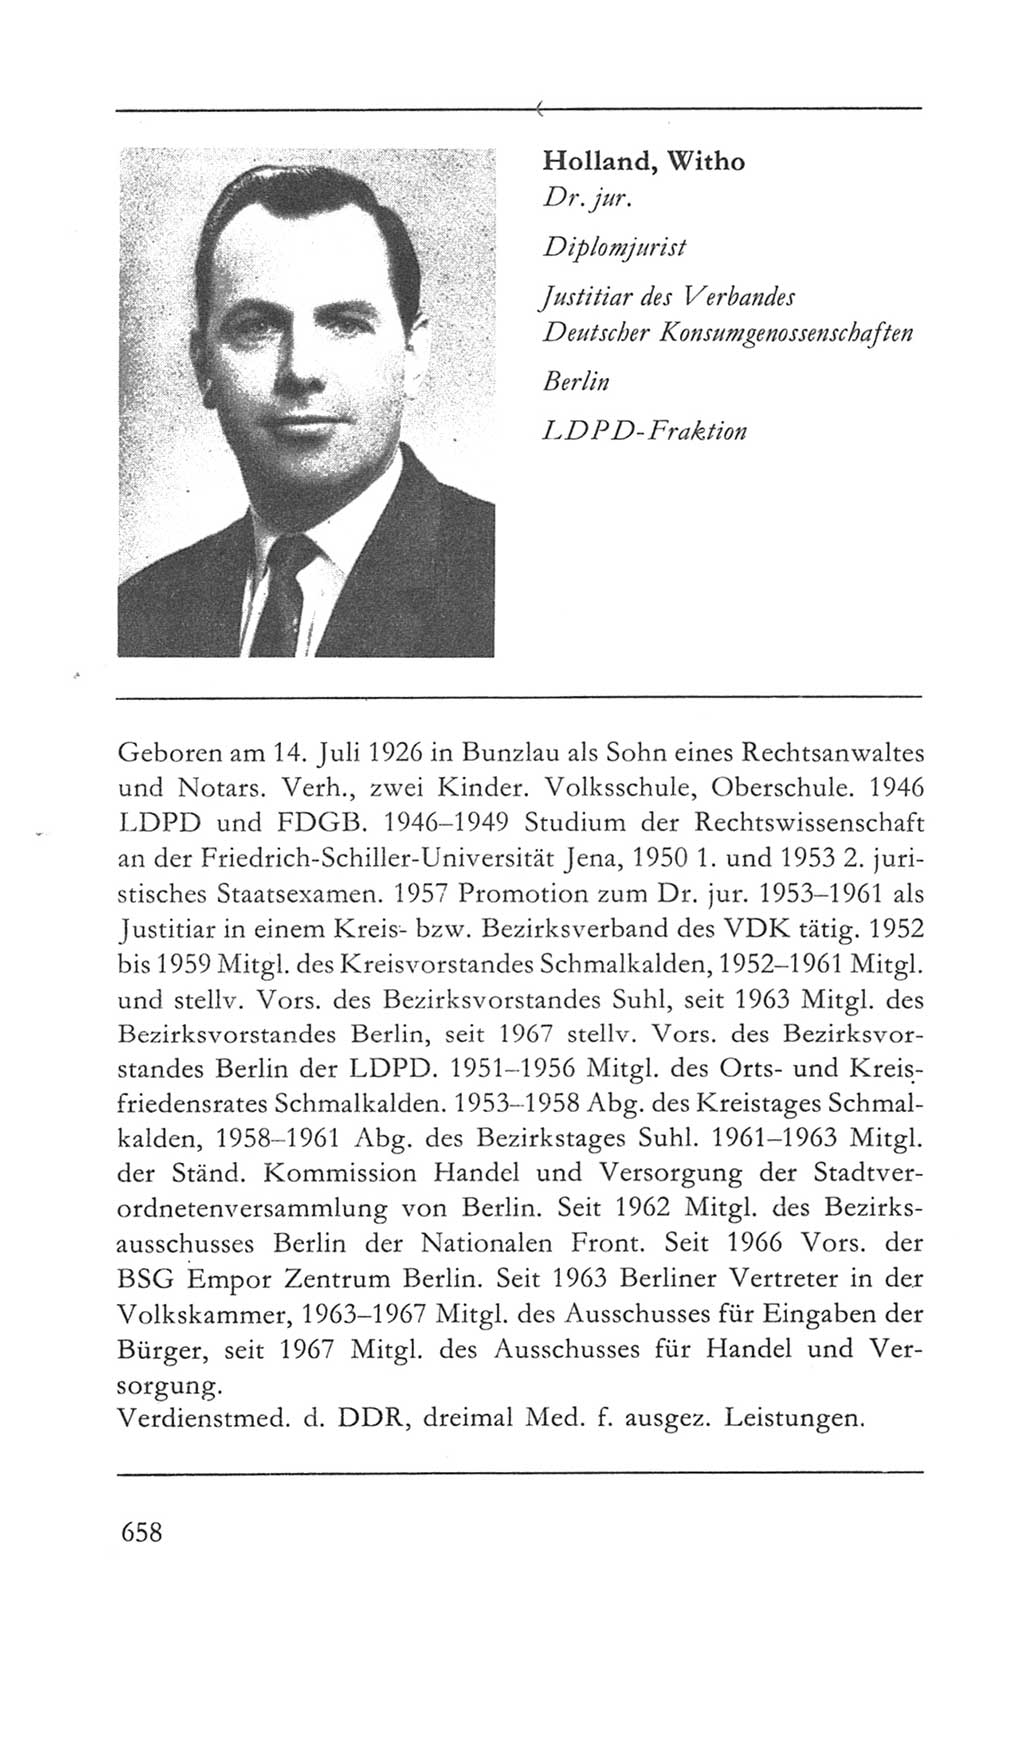 Volkskammer (VK) der Deutschen Demokratischen Republik (DDR) 5. Wahlperiode 1967-1971, Seite 658 (VK. DDR 5. WP. 1967-1971, S. 658)